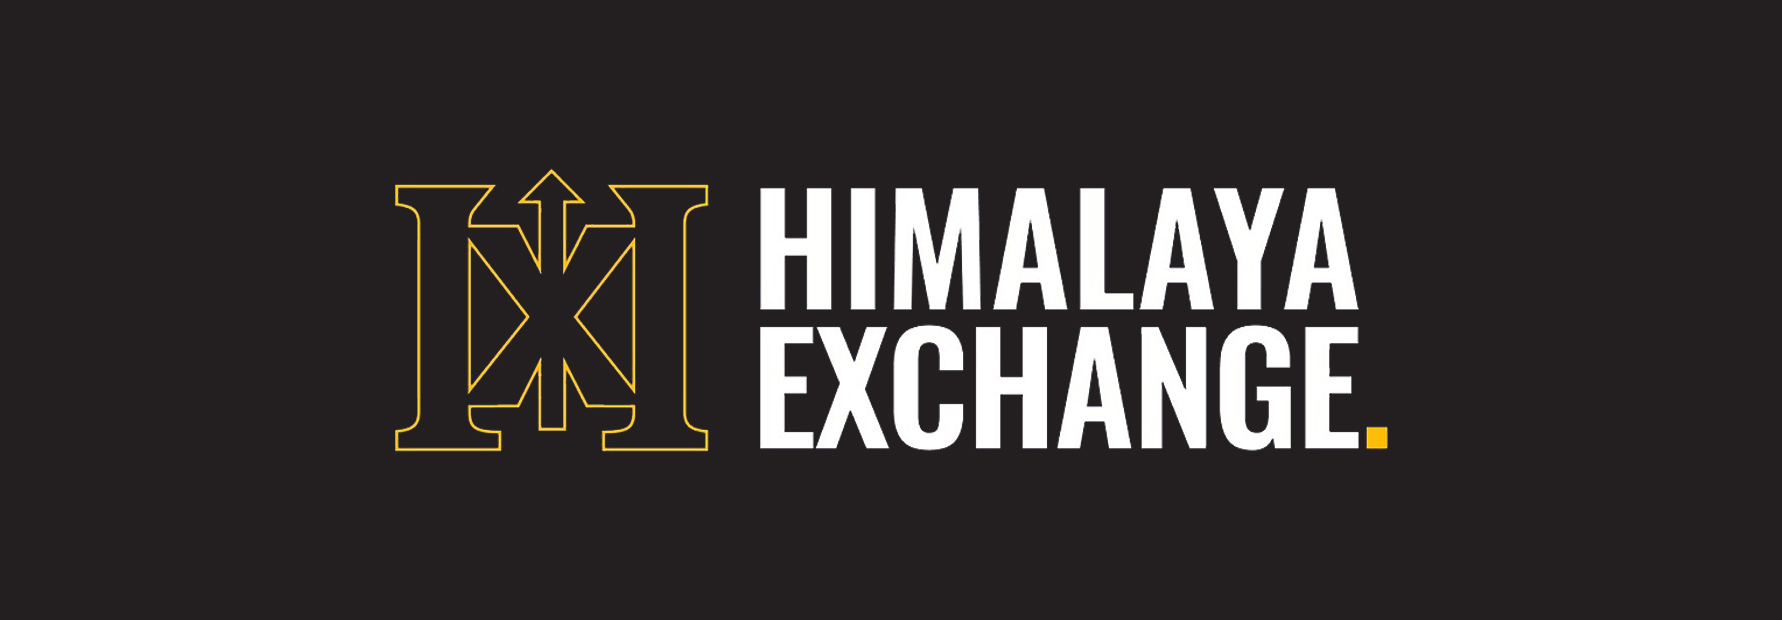 himalaya_exchange-logo.jpg